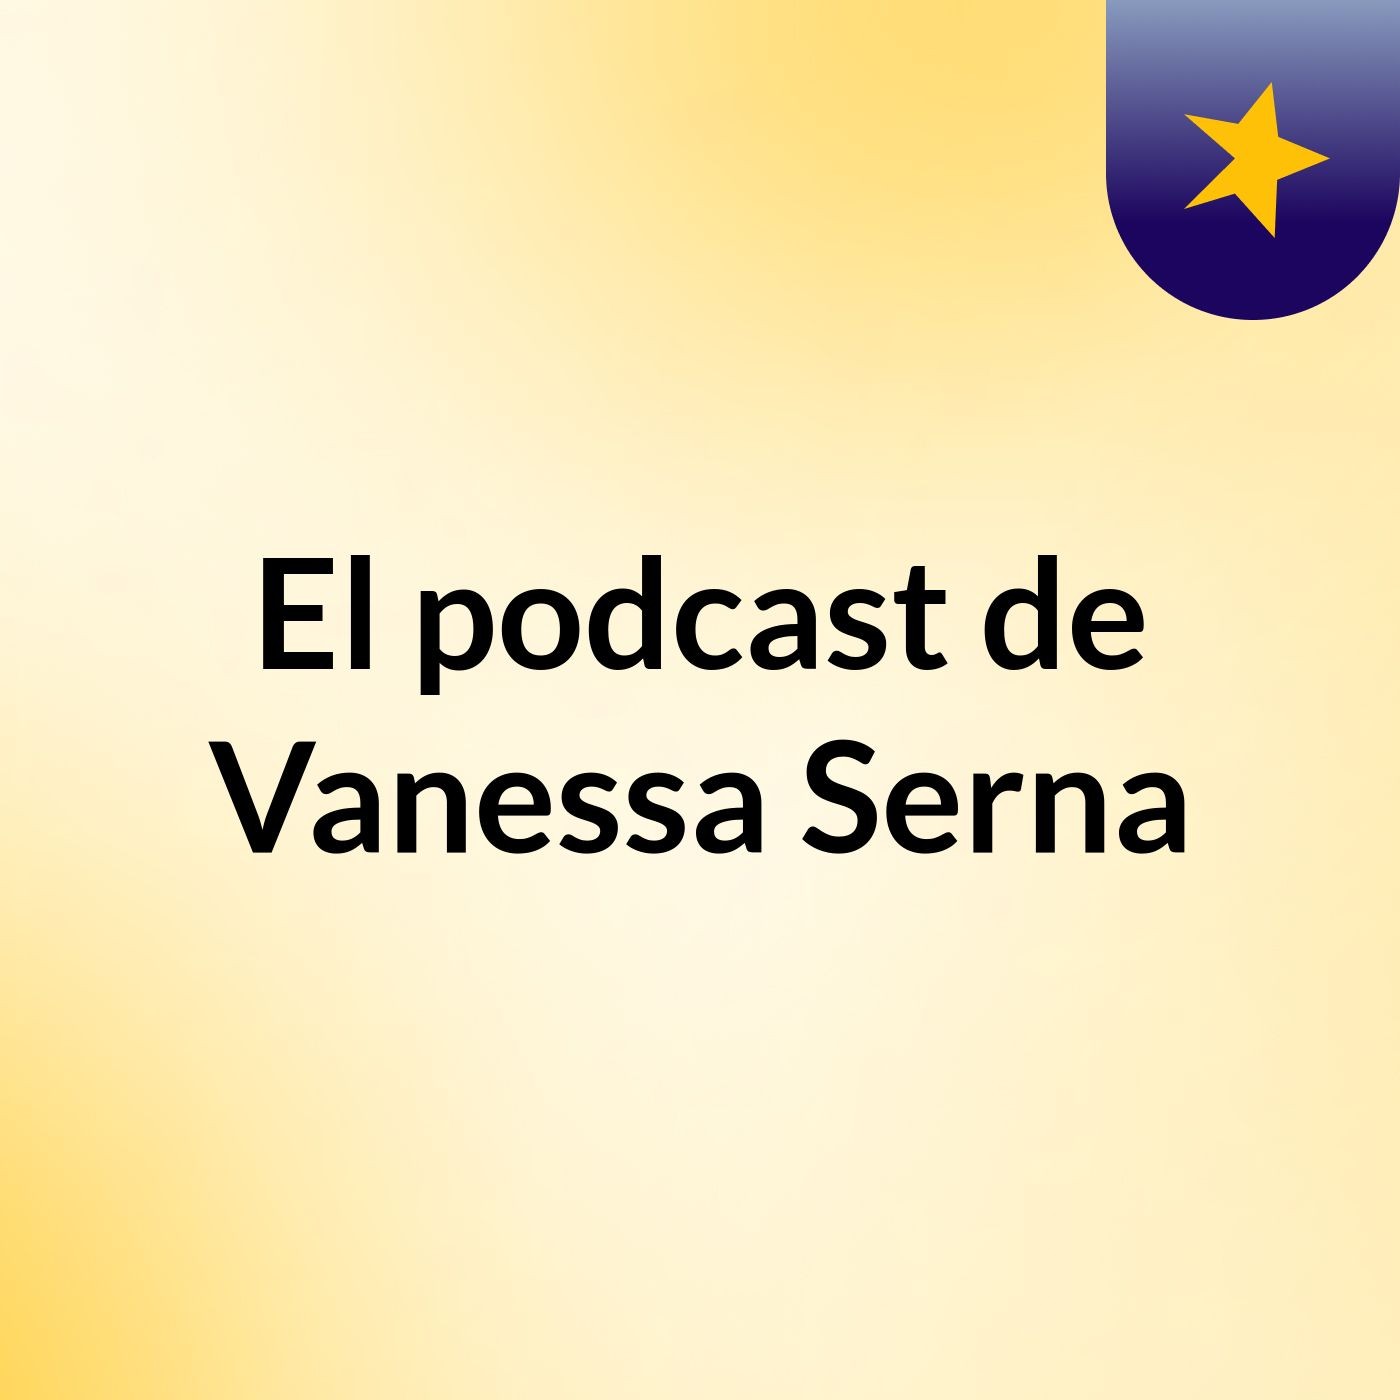 El podcast de Vanessa Serna